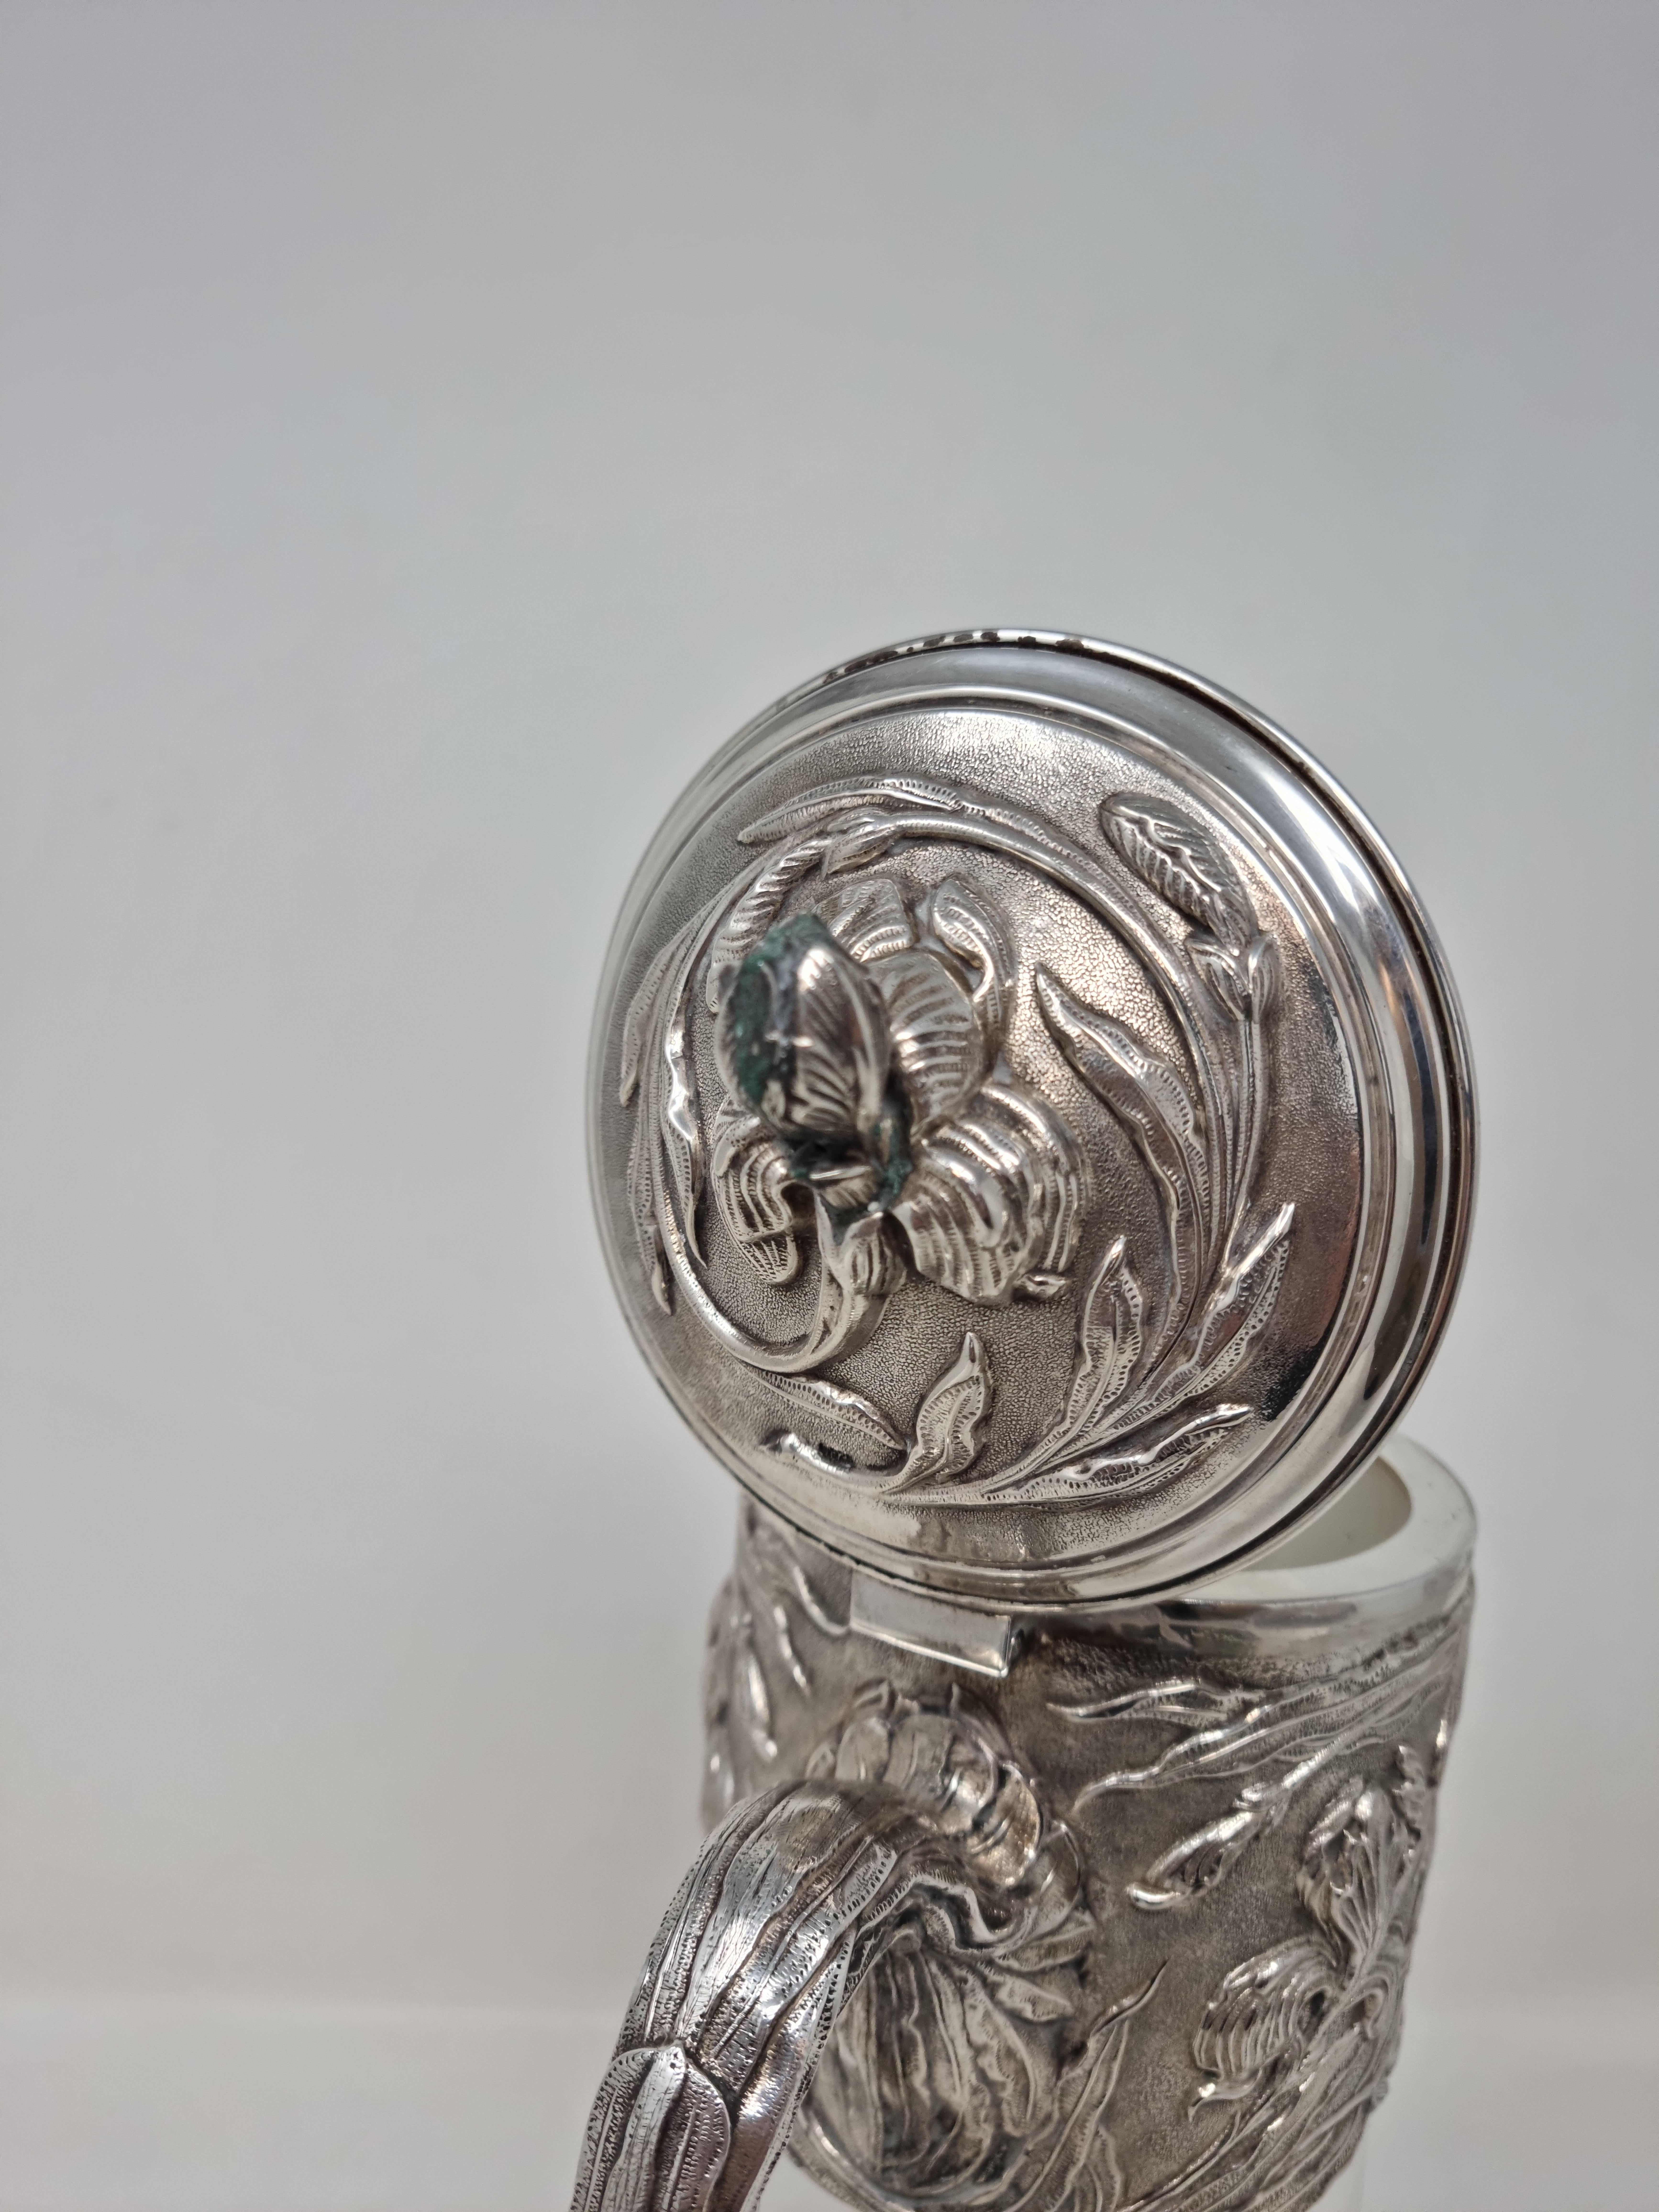 1909 Silver and Acid-Etched Crystal Claret Jug 'Wine Jug' For Sale 4